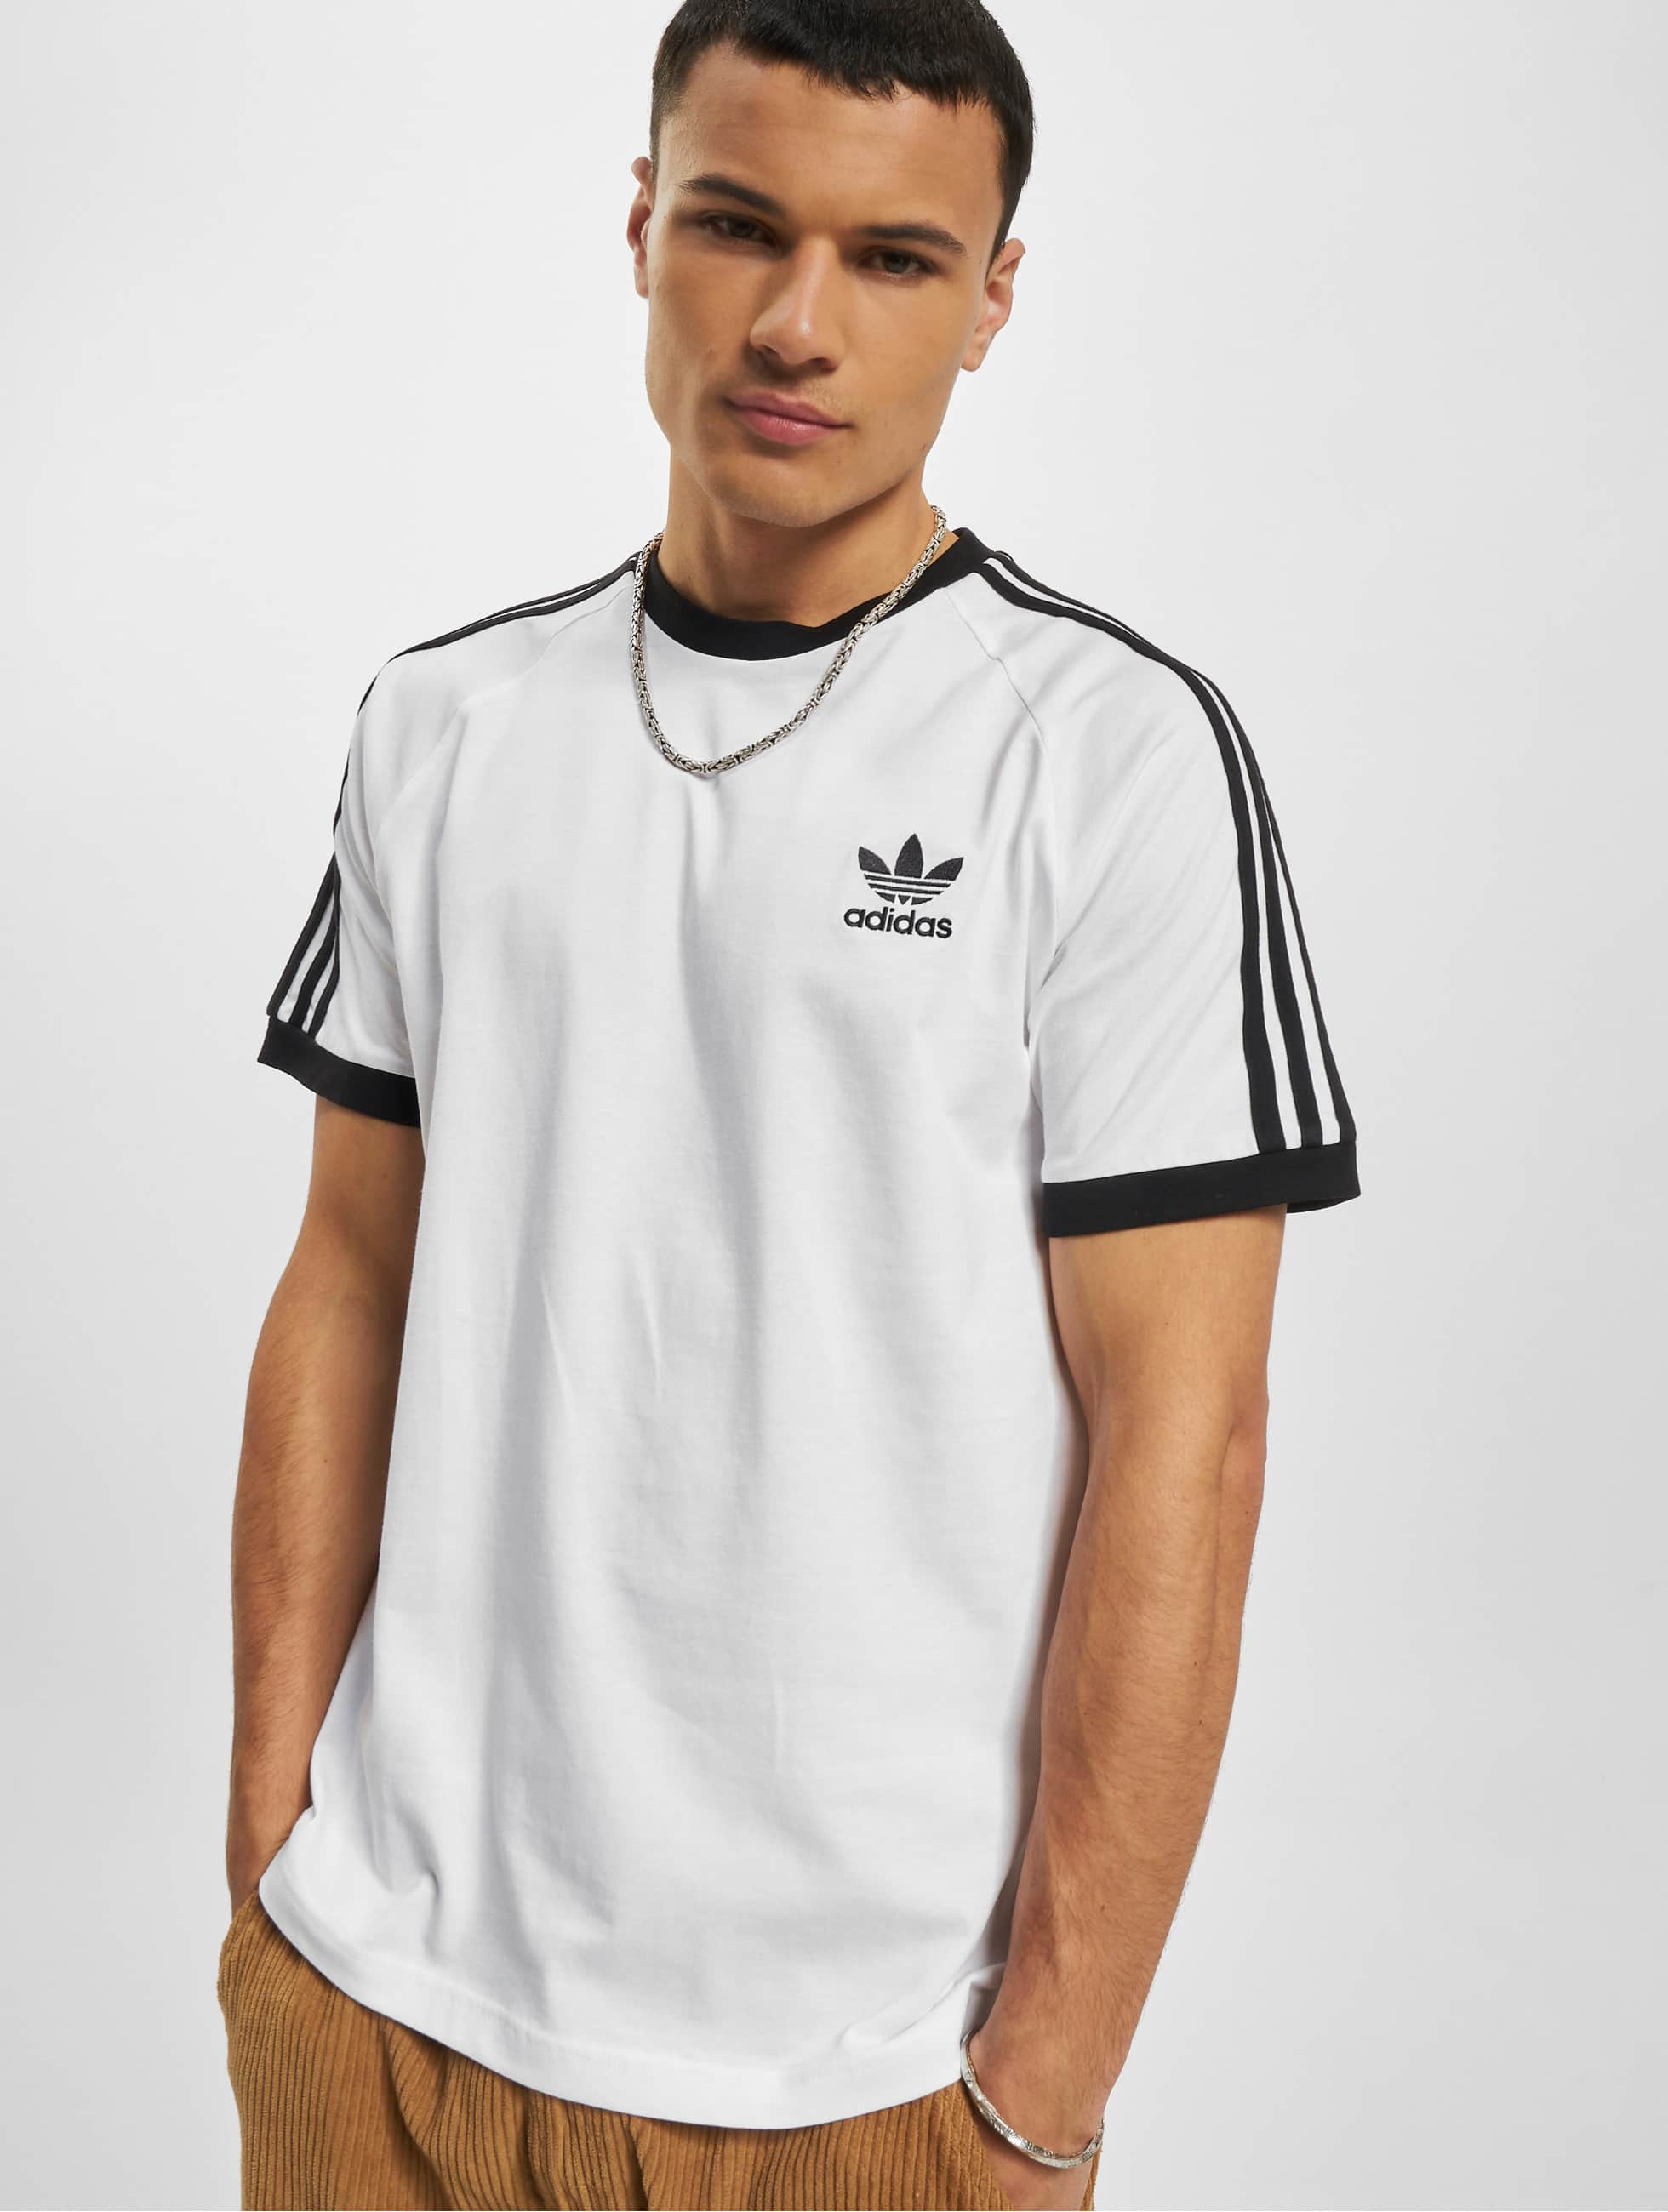 adidas Originals Overwear / T-Shirt 3 Stripes in white 995382